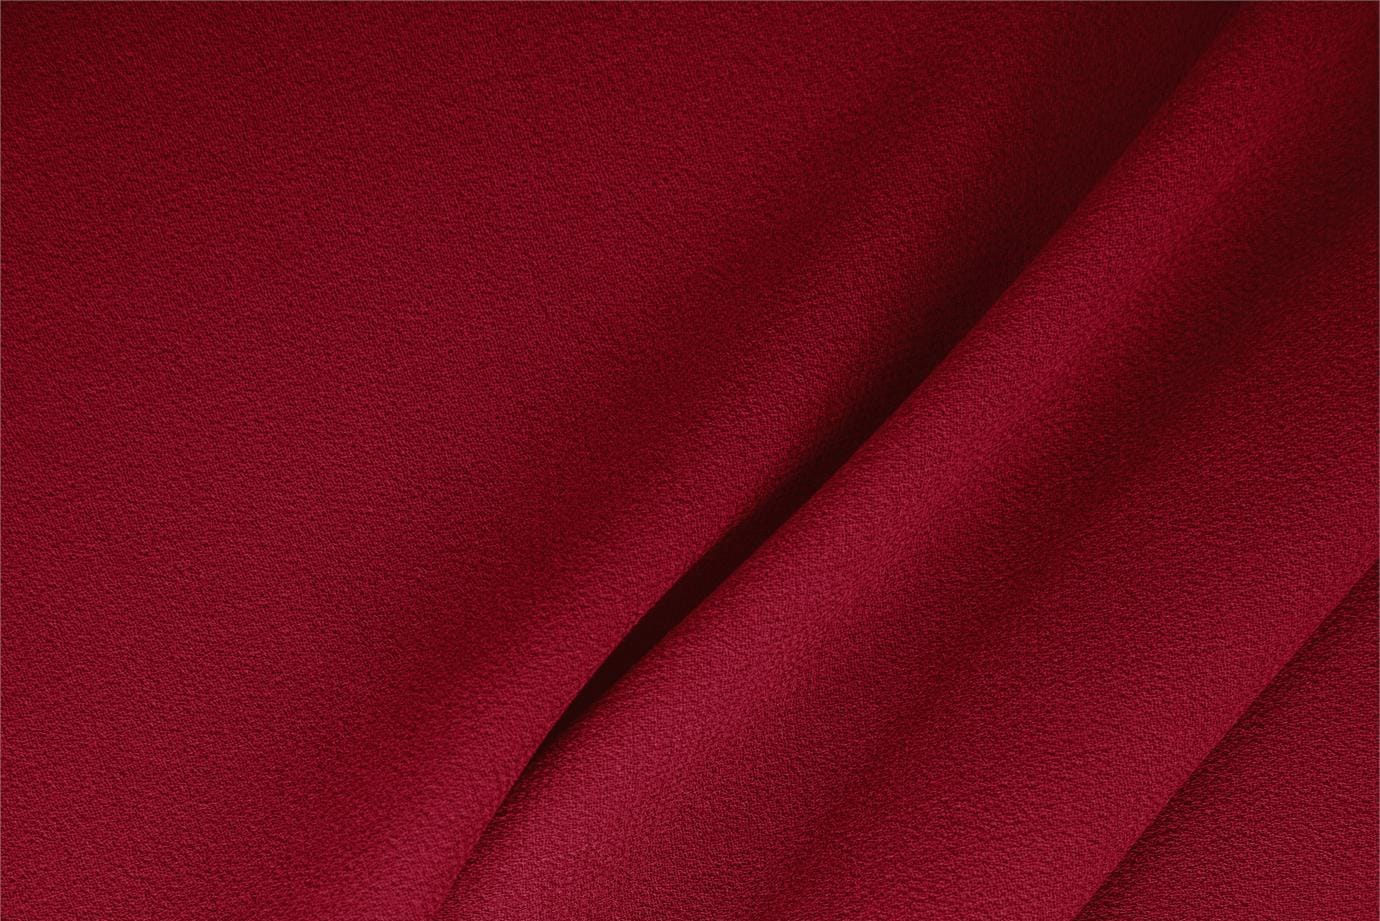 Tissu Double crêpe de laine Rouge campari en Laine pour vêtements